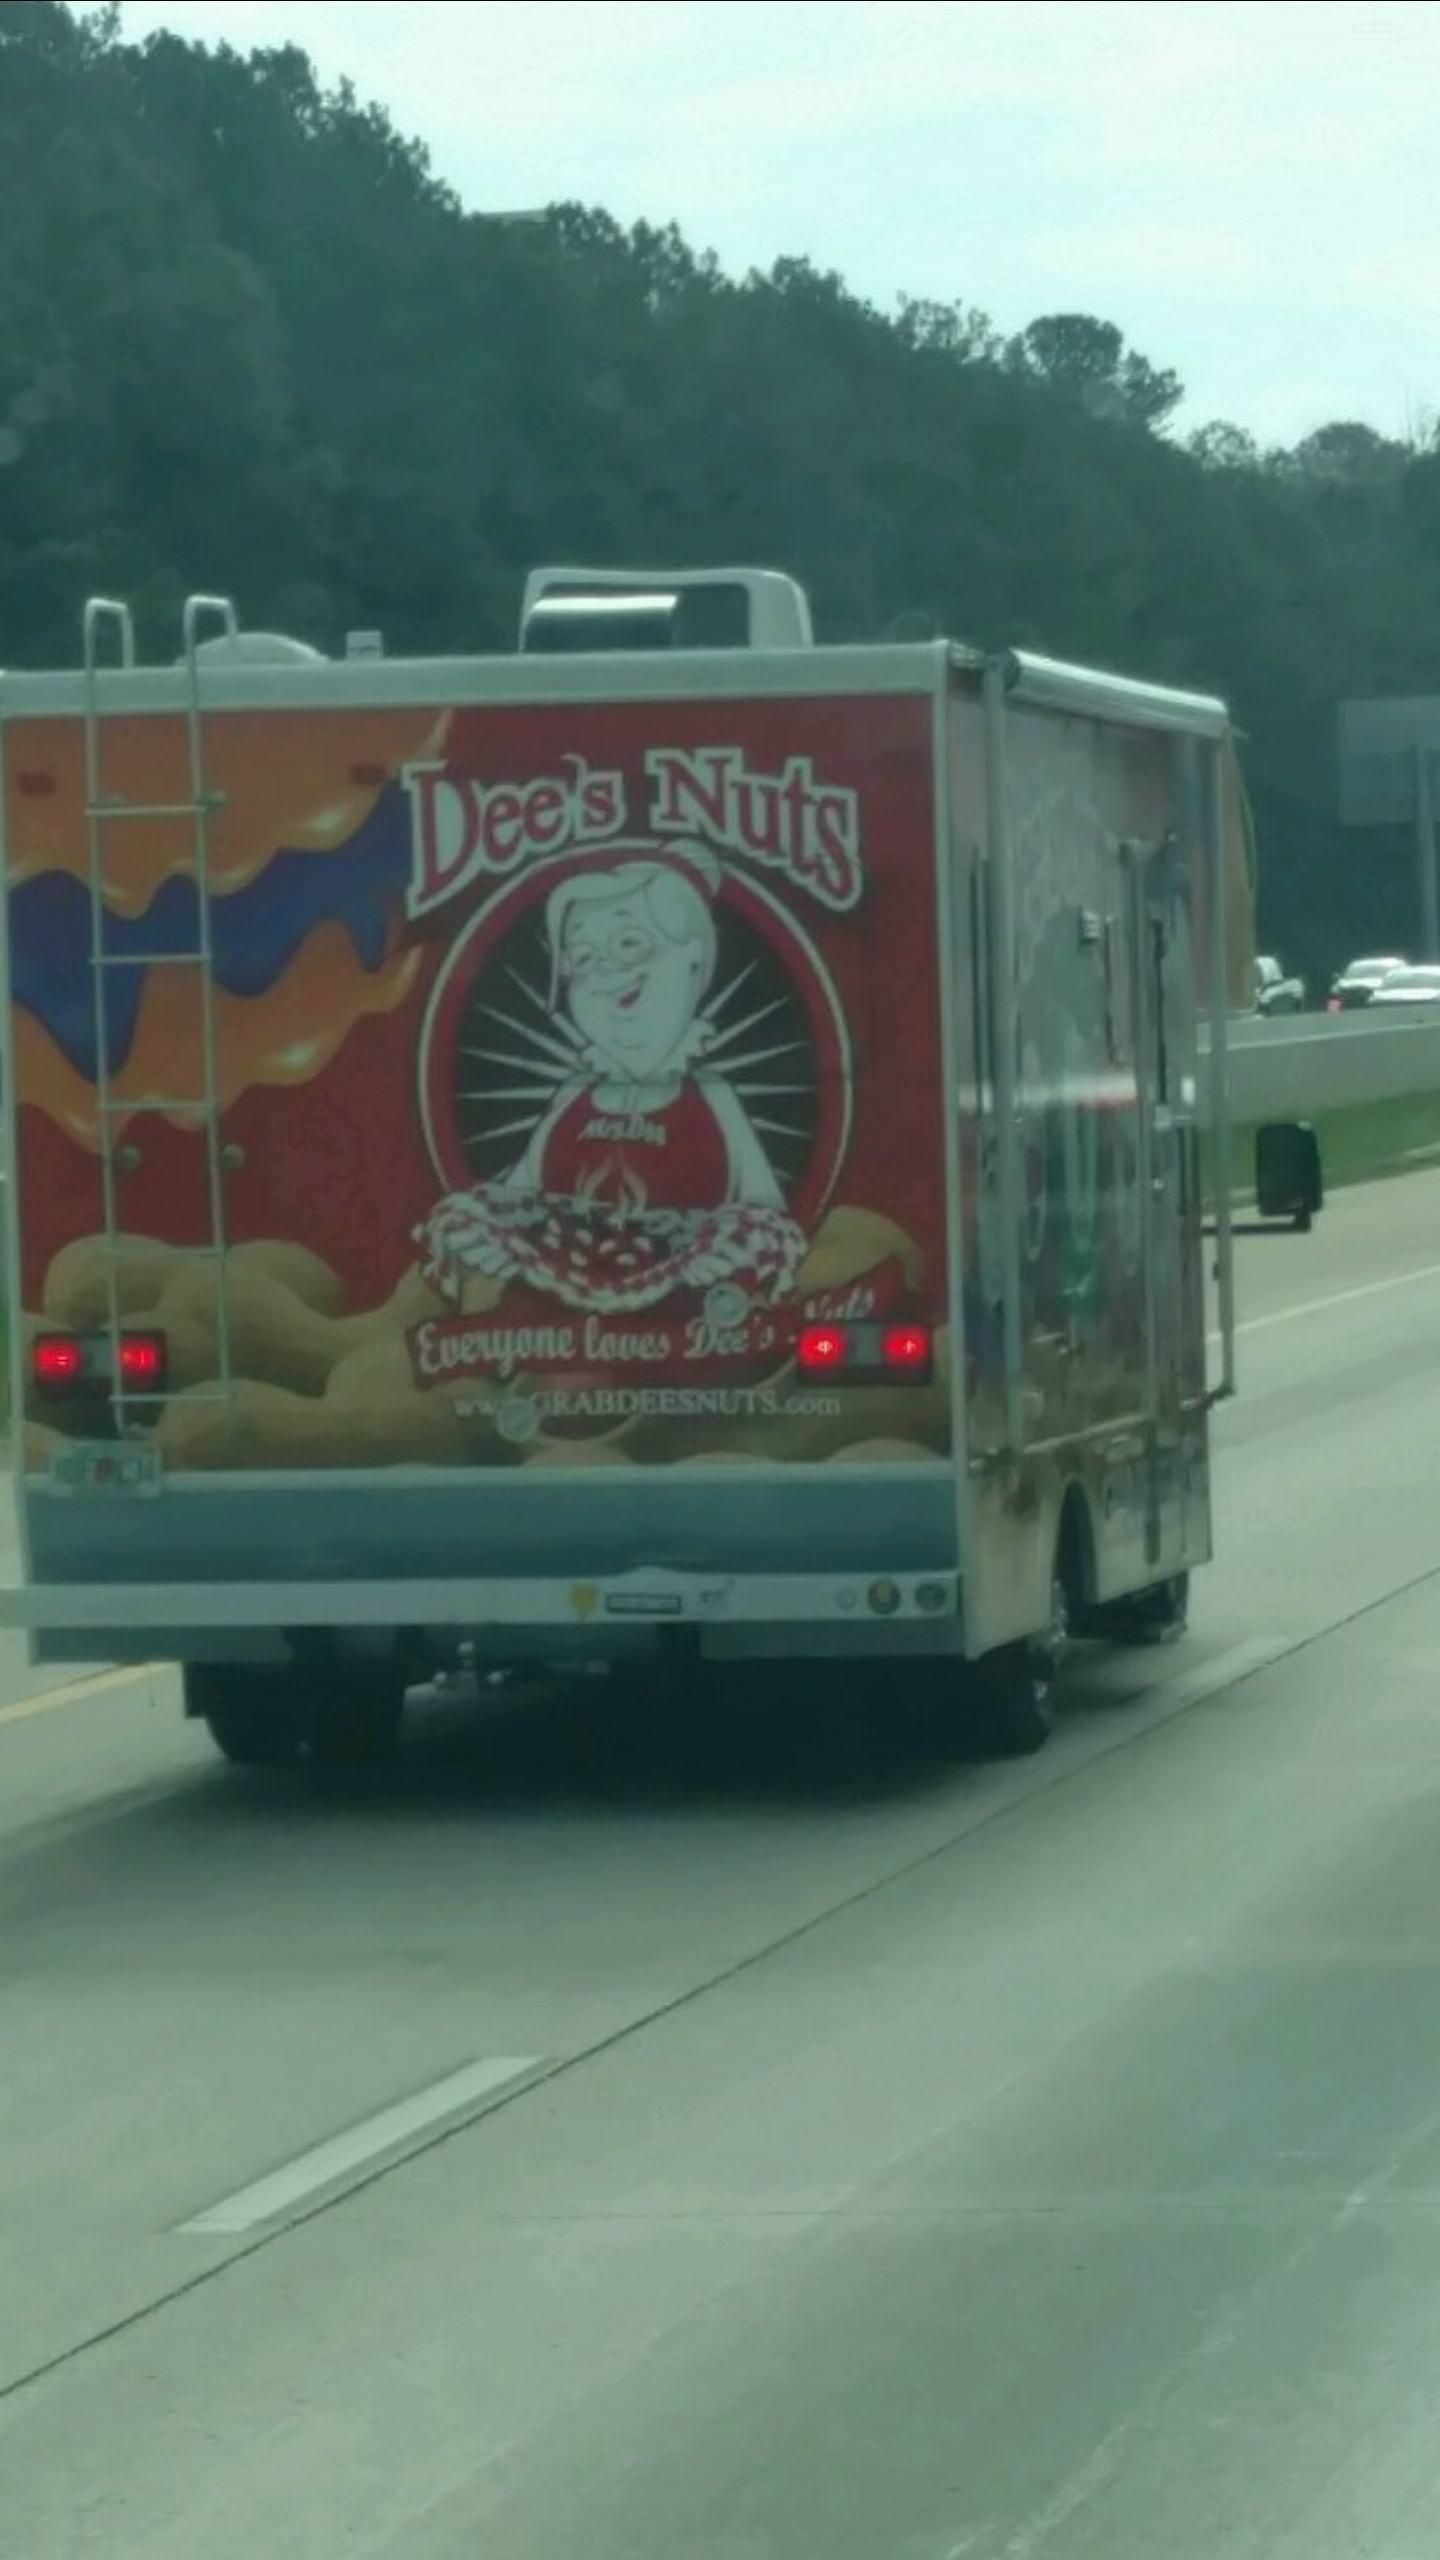 Everyone loves Dee's nuts